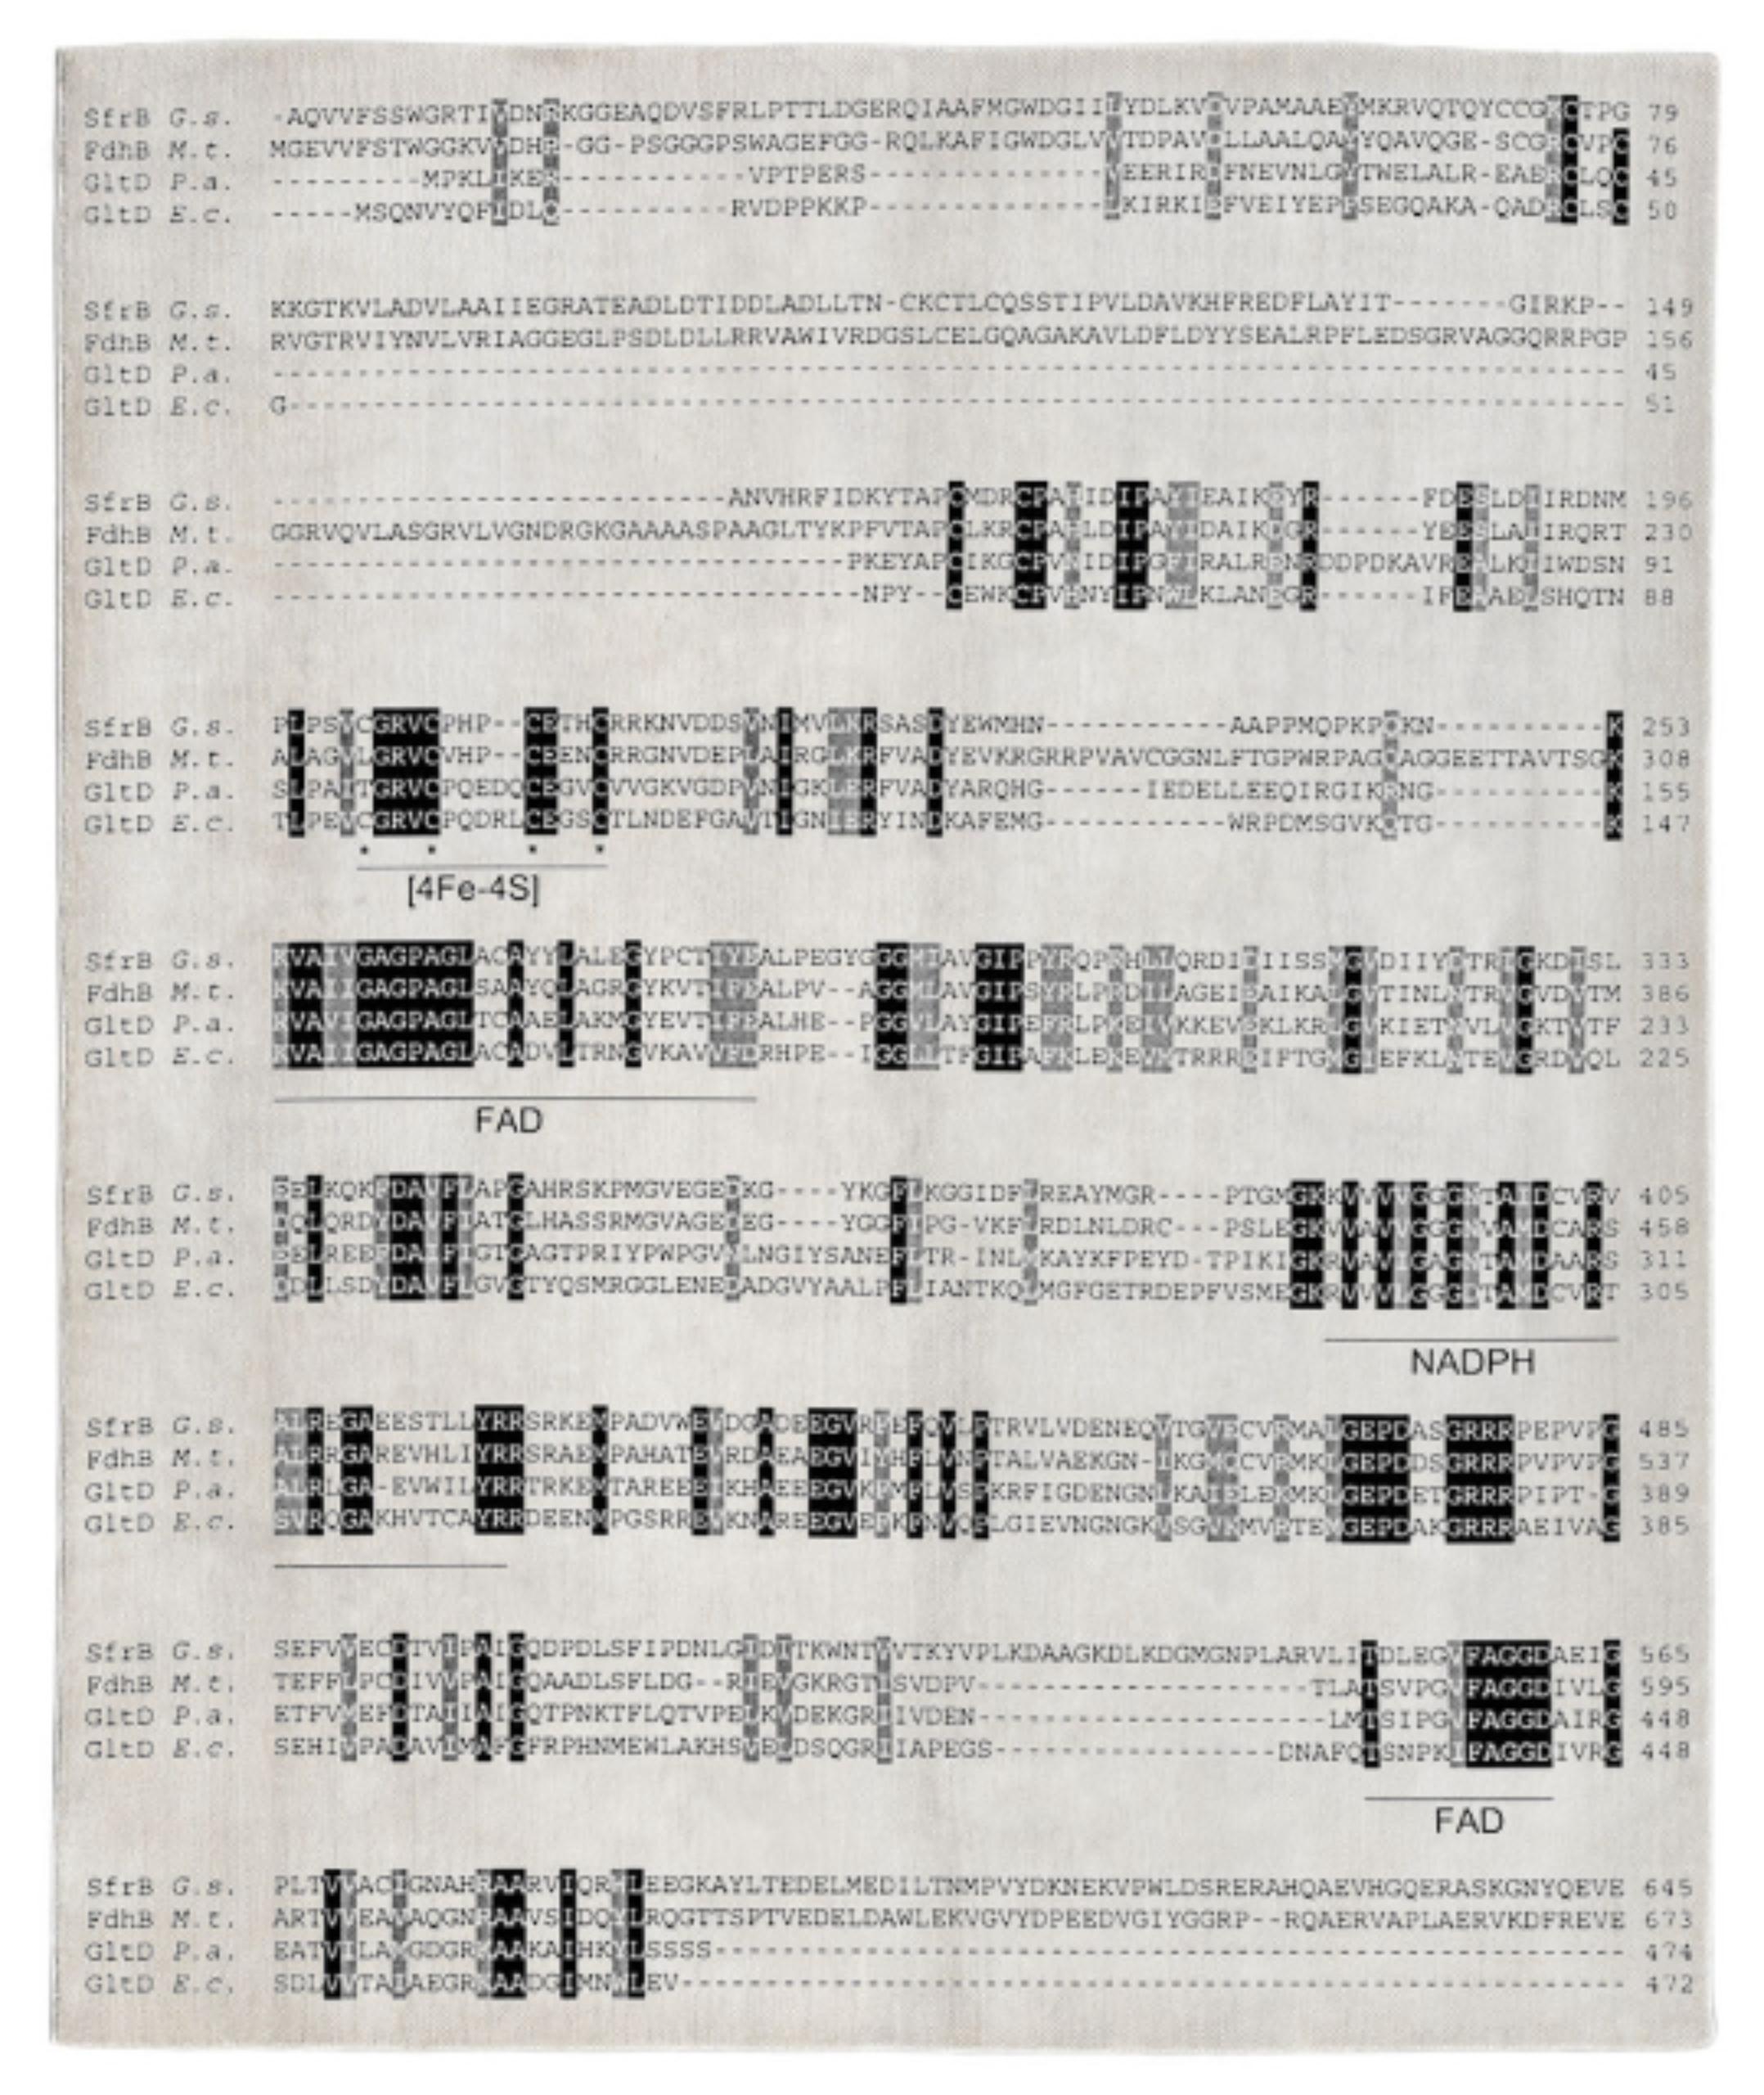 CF V9 von Caturegli Formica
Abmessungen: B 310 x L 260 cm
MATERIALIEN: Wolle

1989-90 von Elios Palmisano für die Sammlung/Ausstellung Tappeti e Arazzi produziert


Biographische Notizen

Beppe Caturegli (1957) und Giovannella Formica (1957-2019)